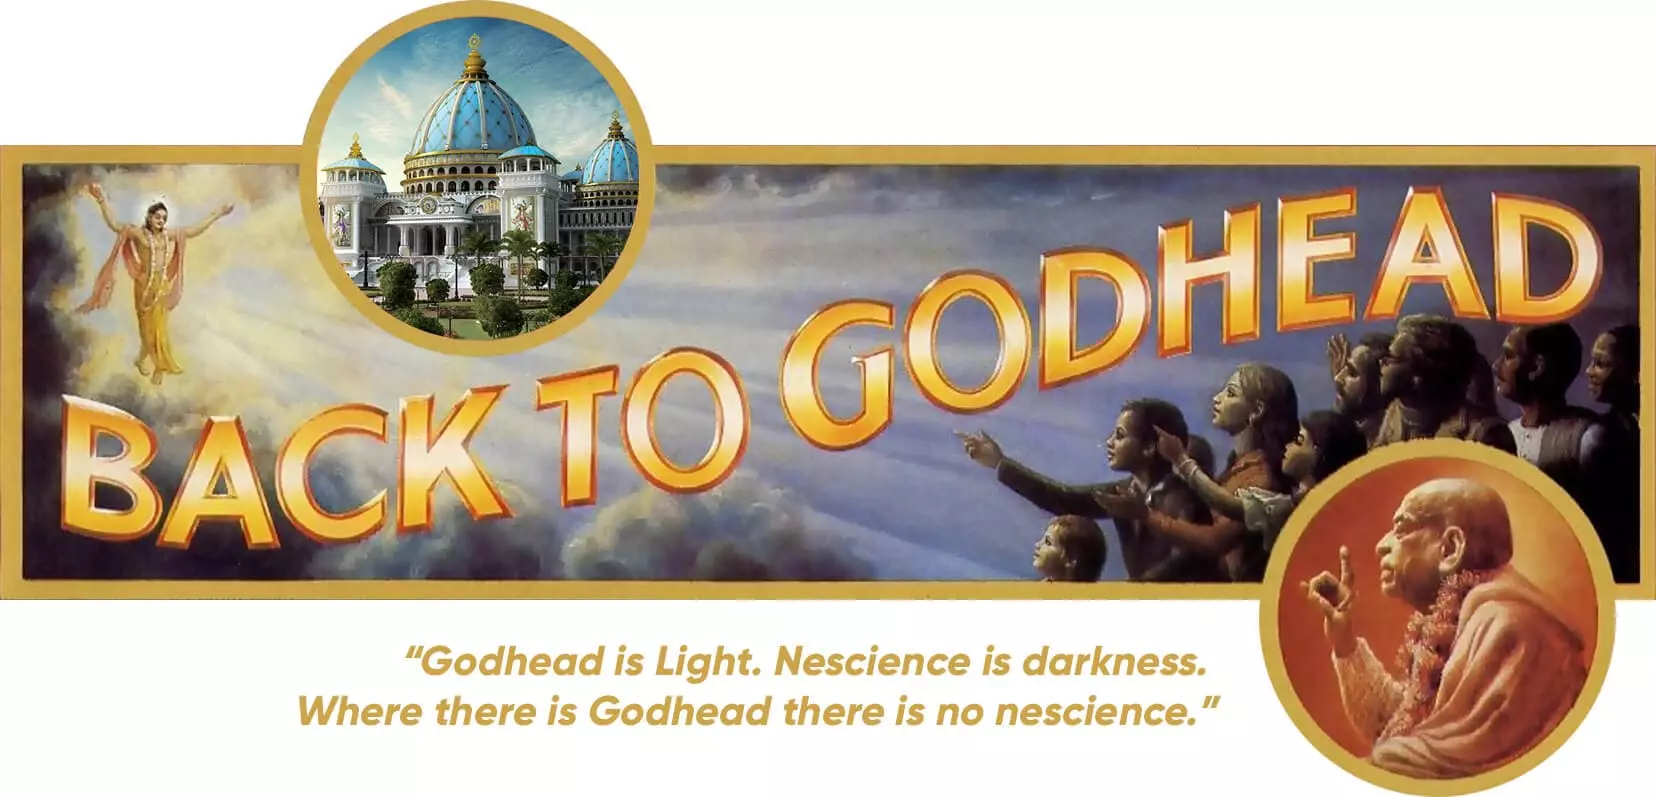 Programa de Alcance del Planetario del Templo del Védico - Portada de la revista Back to Godhead